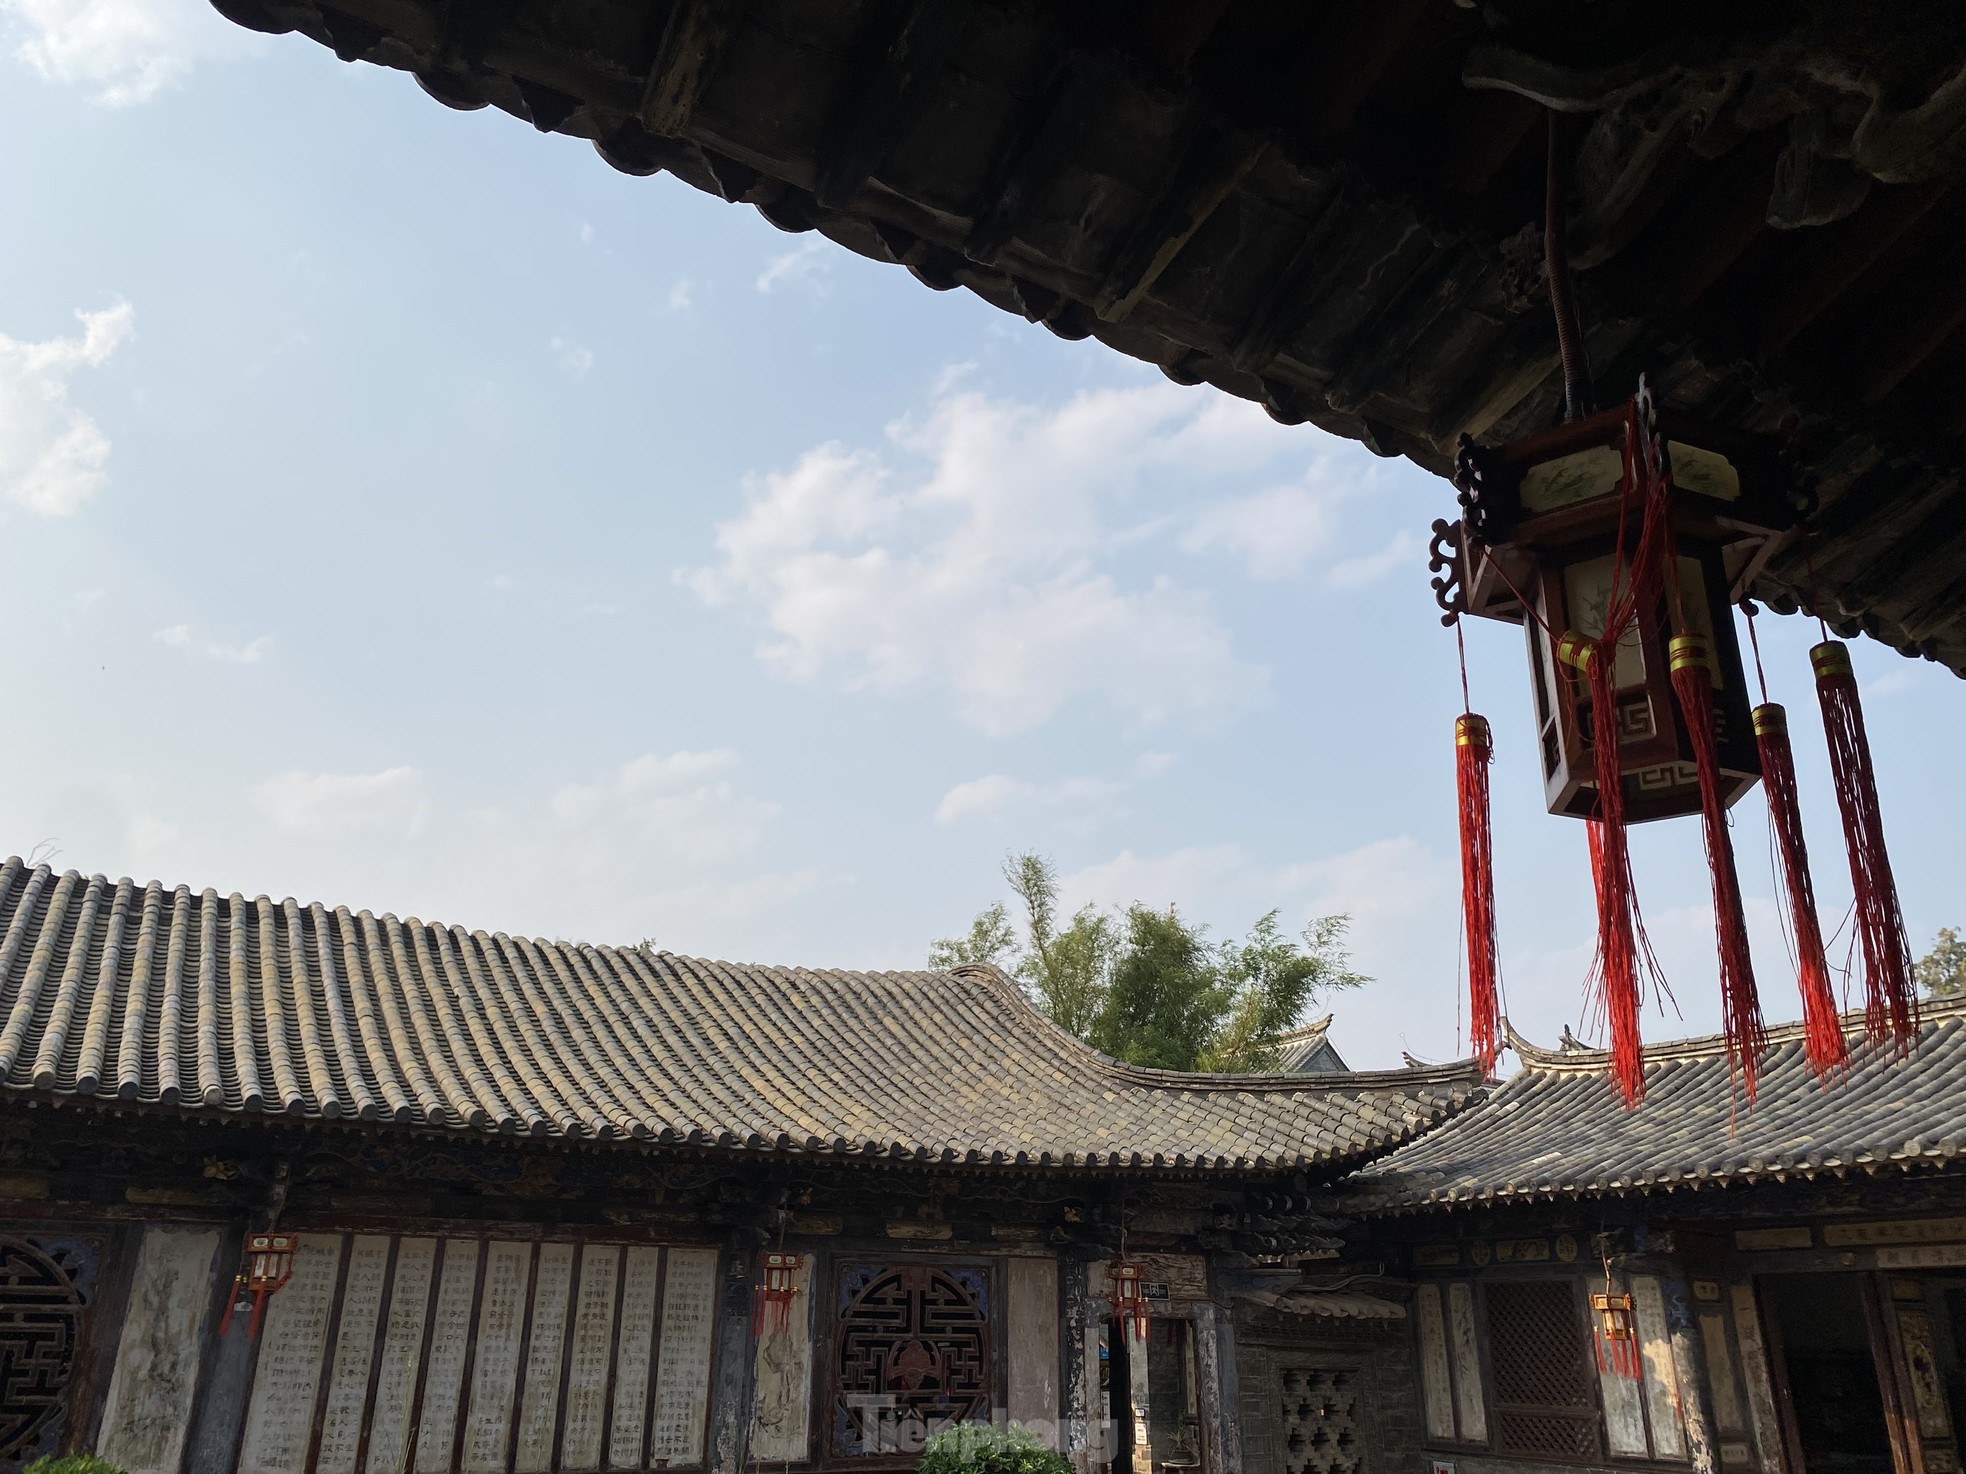 Chiêm ngưỡng vẻ đẹp kiến trúc của thành cổ Trung Quốc ảnh 15